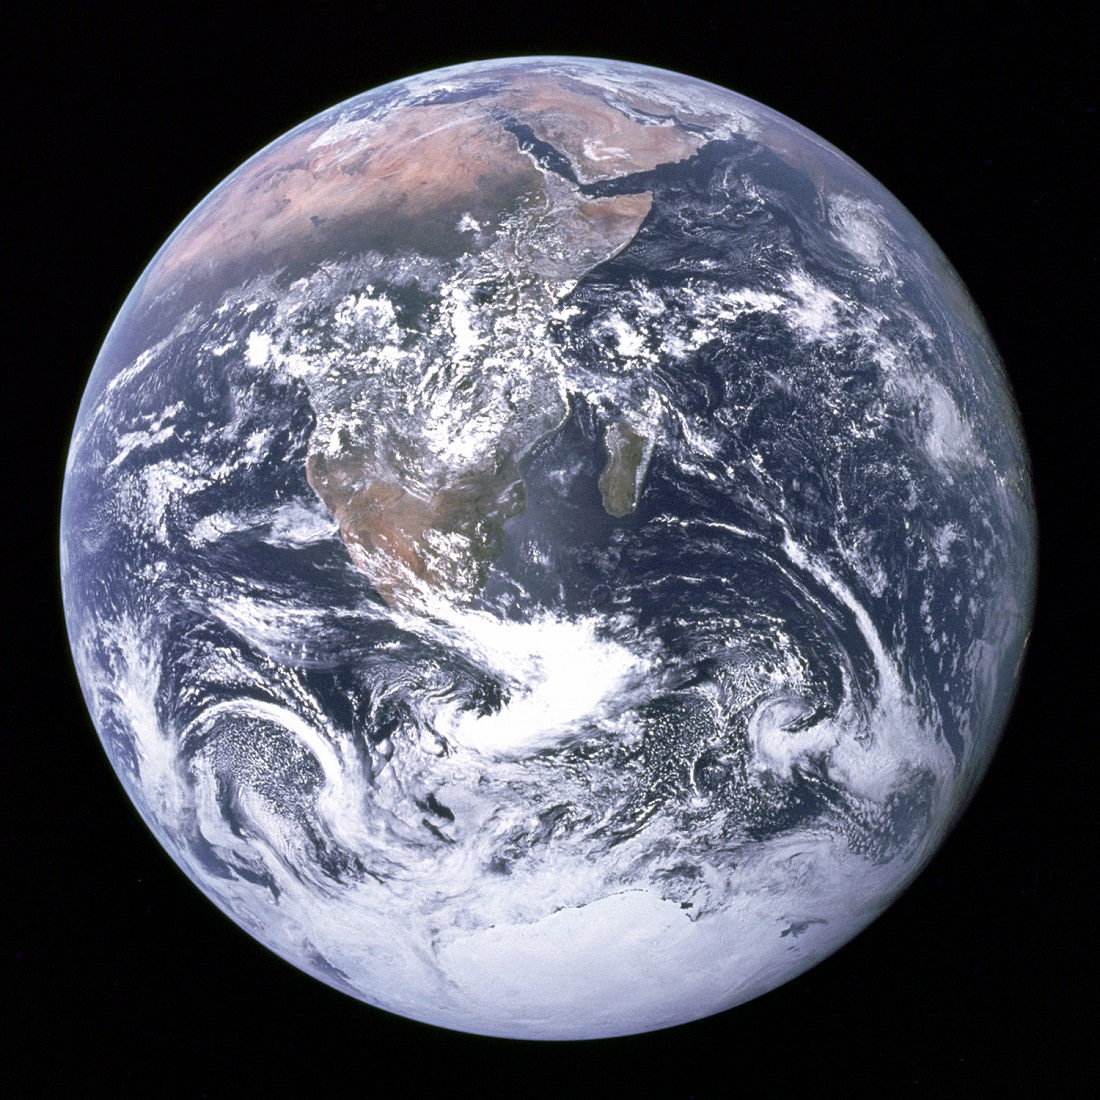 כדור הארץ, "הגולה הכחולה". צילום: NASA